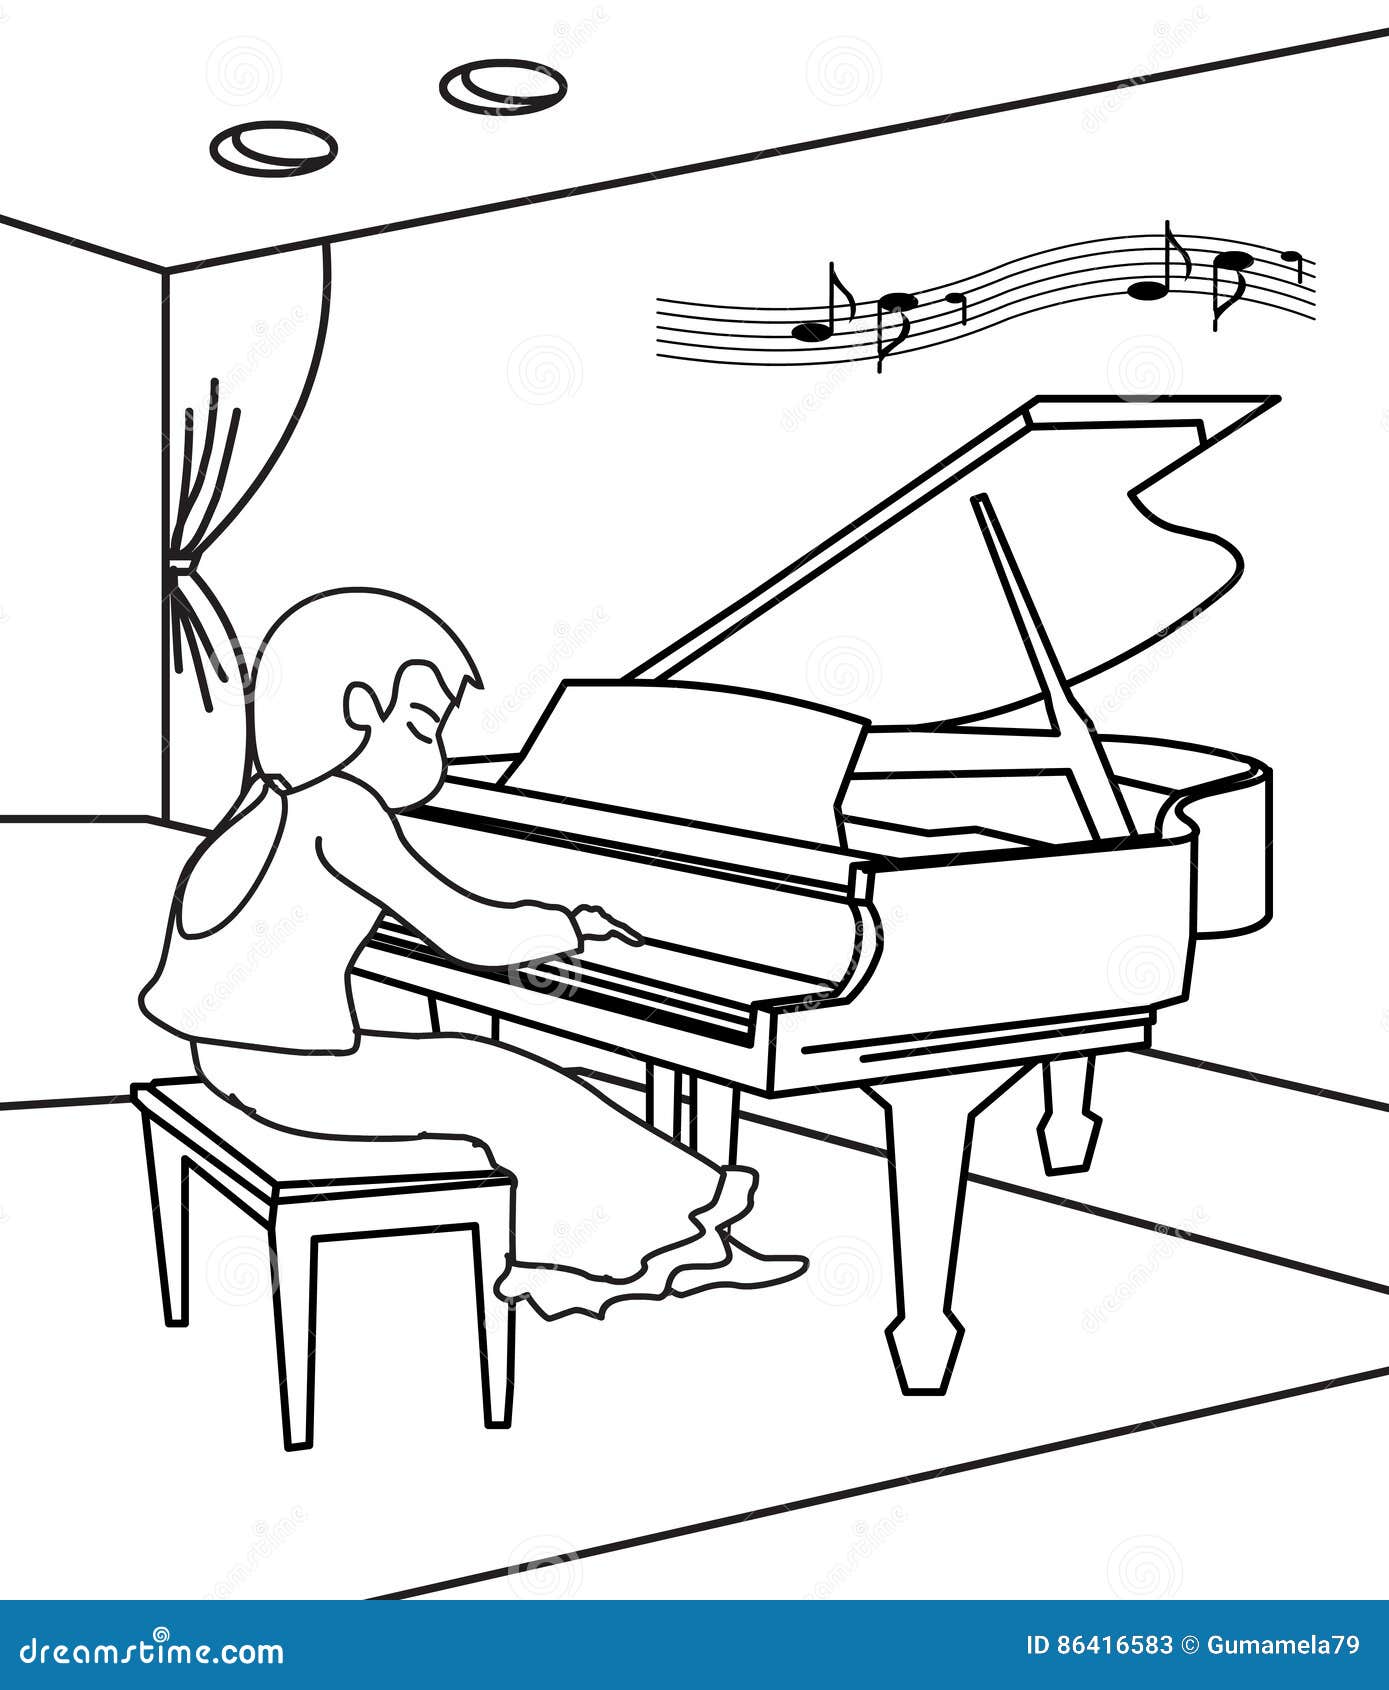 Download Retro Cartoon Pianist | CartoonDealer.com #37598187